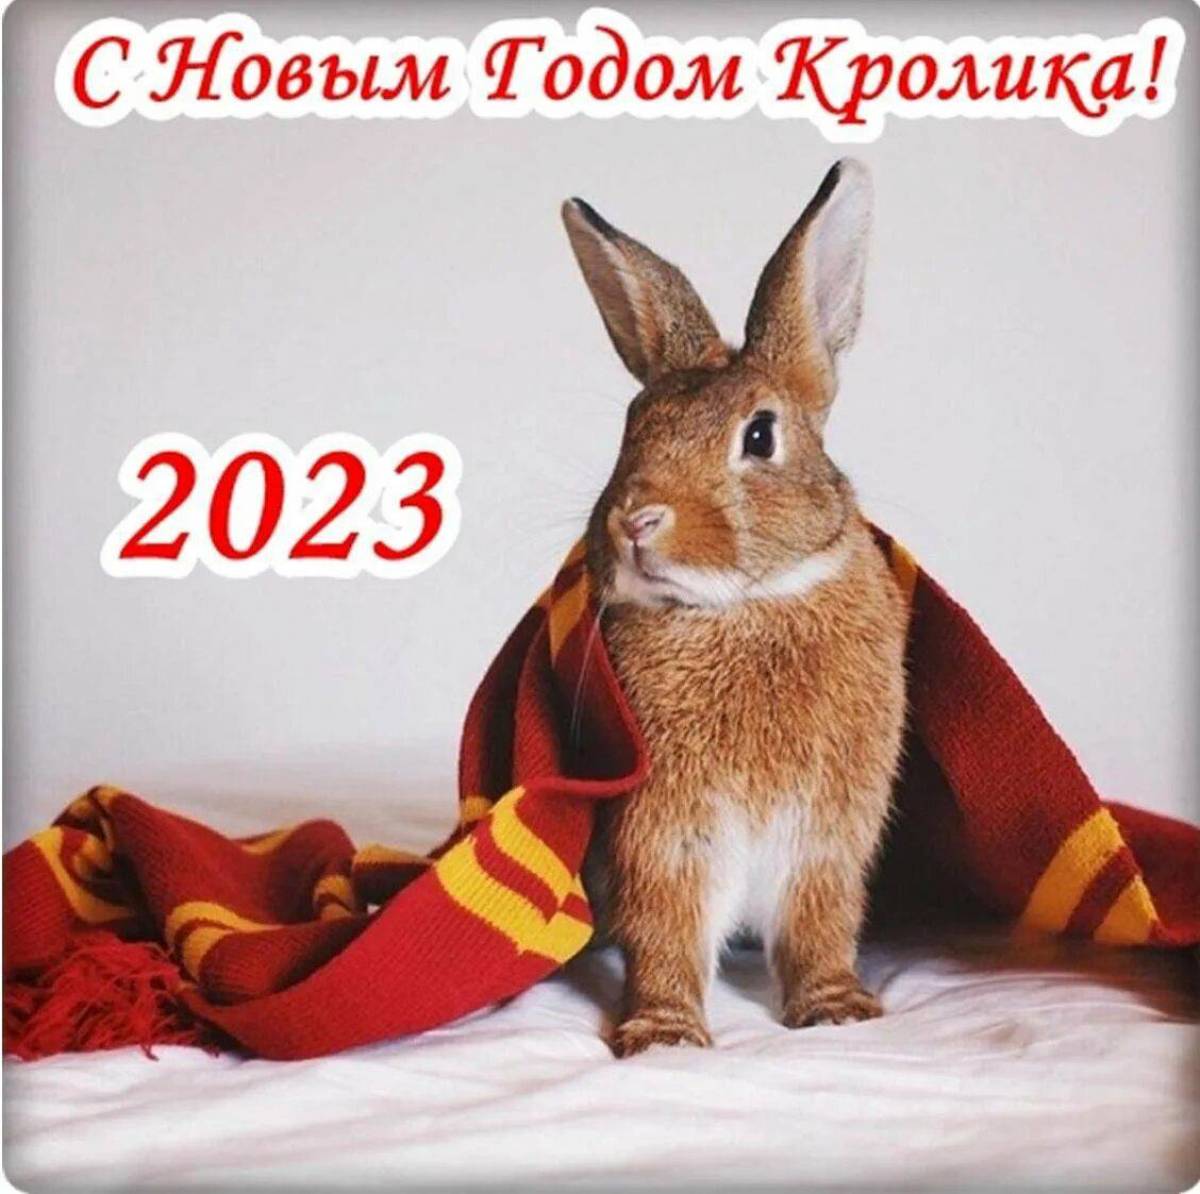 Удачного года 2023. С новым годом кролика 2023. С наступающим новым годом кролика 2023. Поздравление с новым годом кролика 2023 года. Поздравление с новым годом кролика.